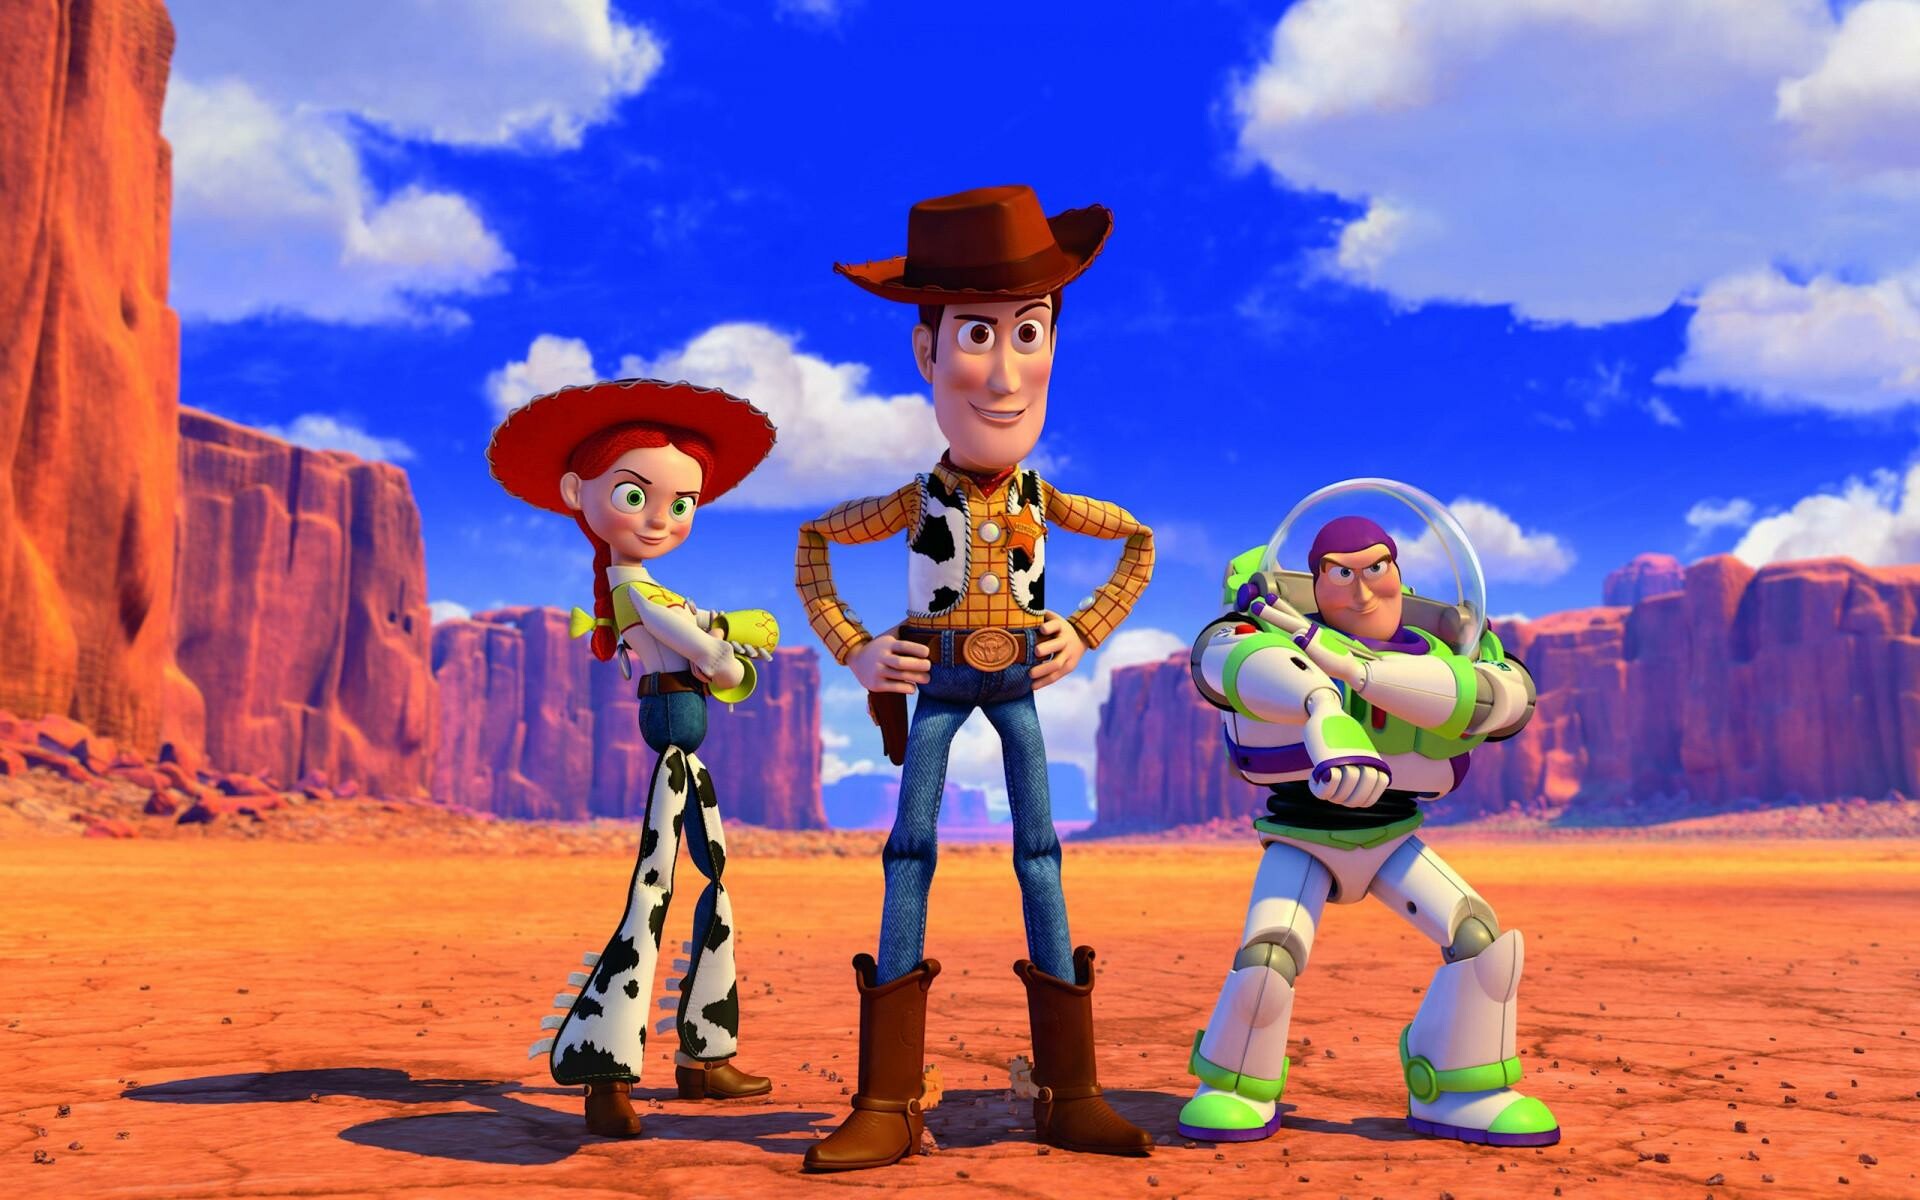 Toy Story: Woody, Buzz Lightyear, and Jessie, Pixar Animation Studios. 1920x1200 HD Wallpaper.